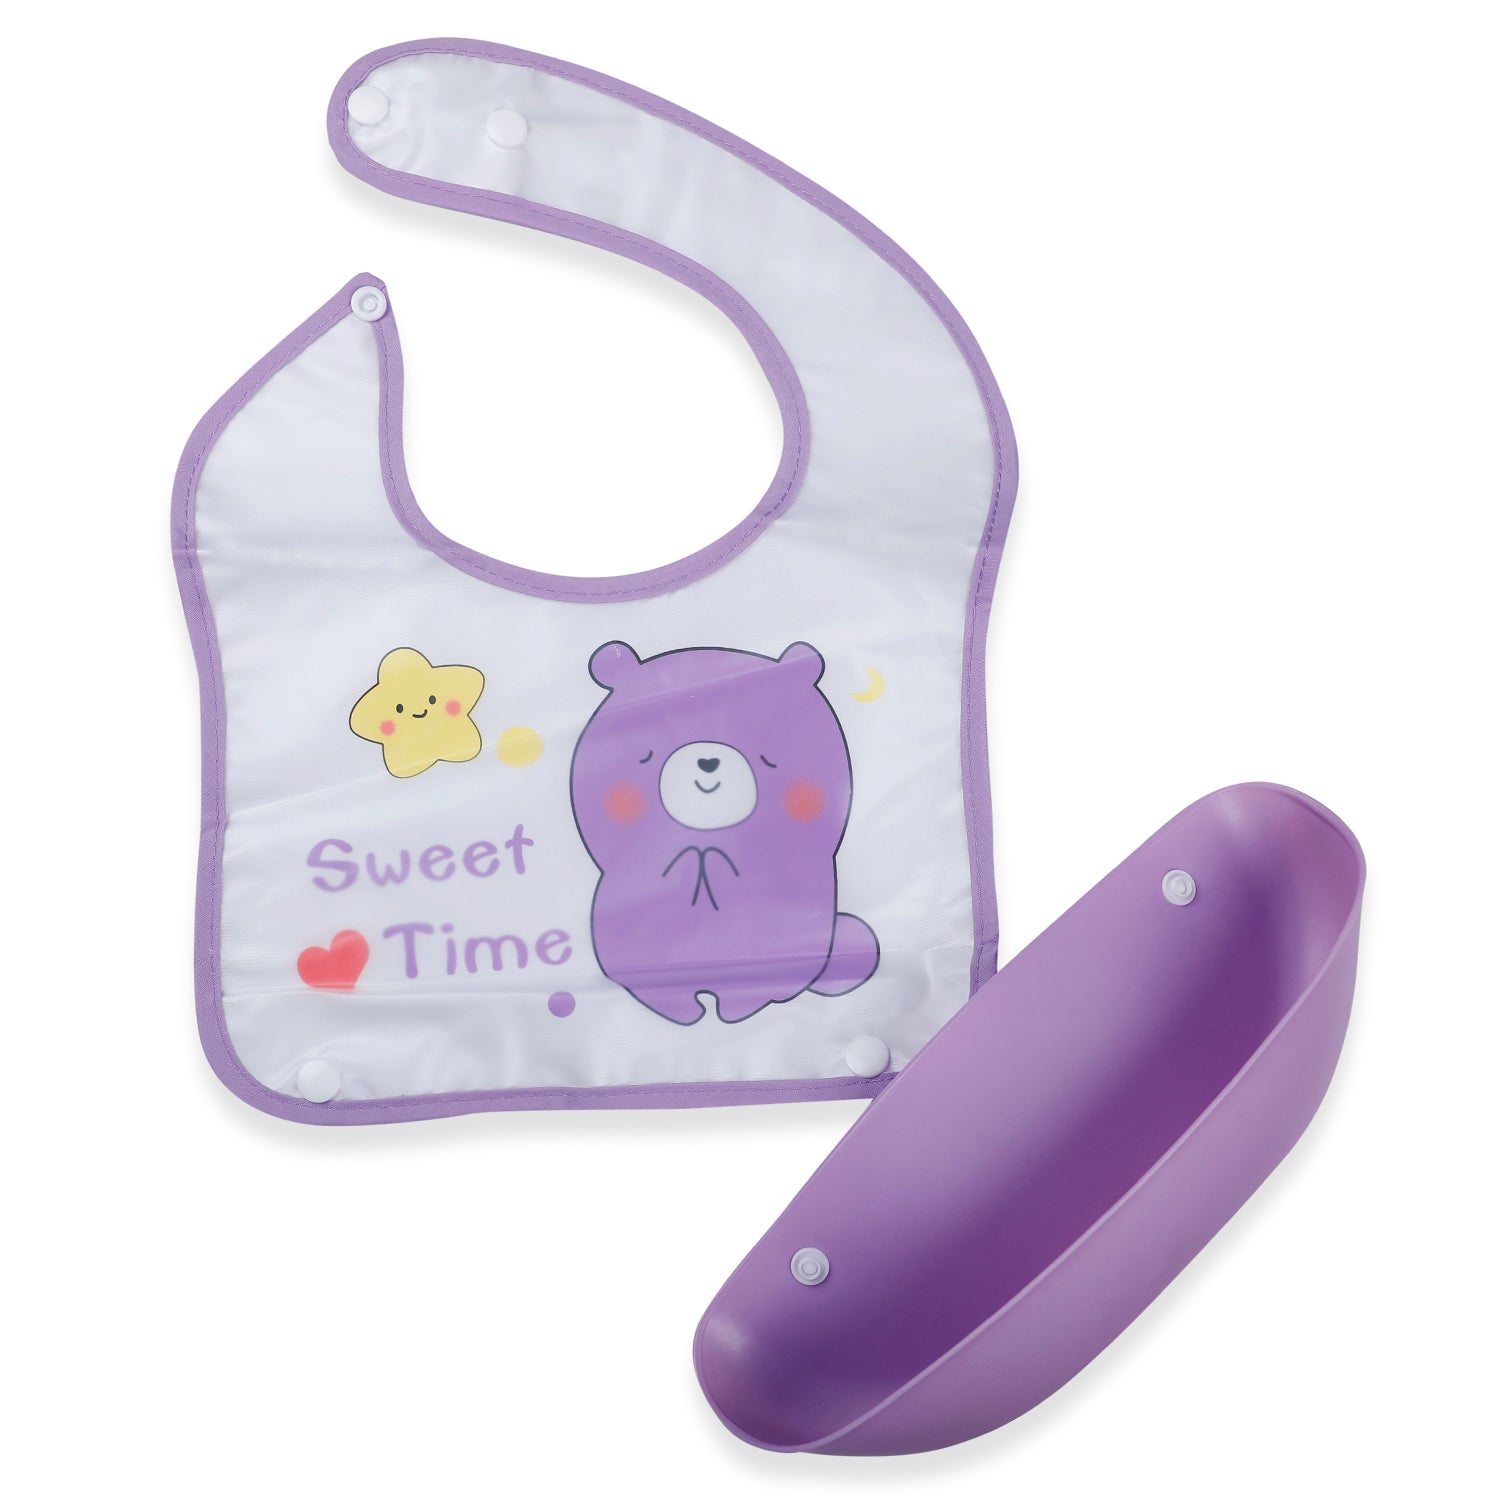 Baby Moo Sweet Time Premium Waterproof Crumb Catcher Bibs - Purple